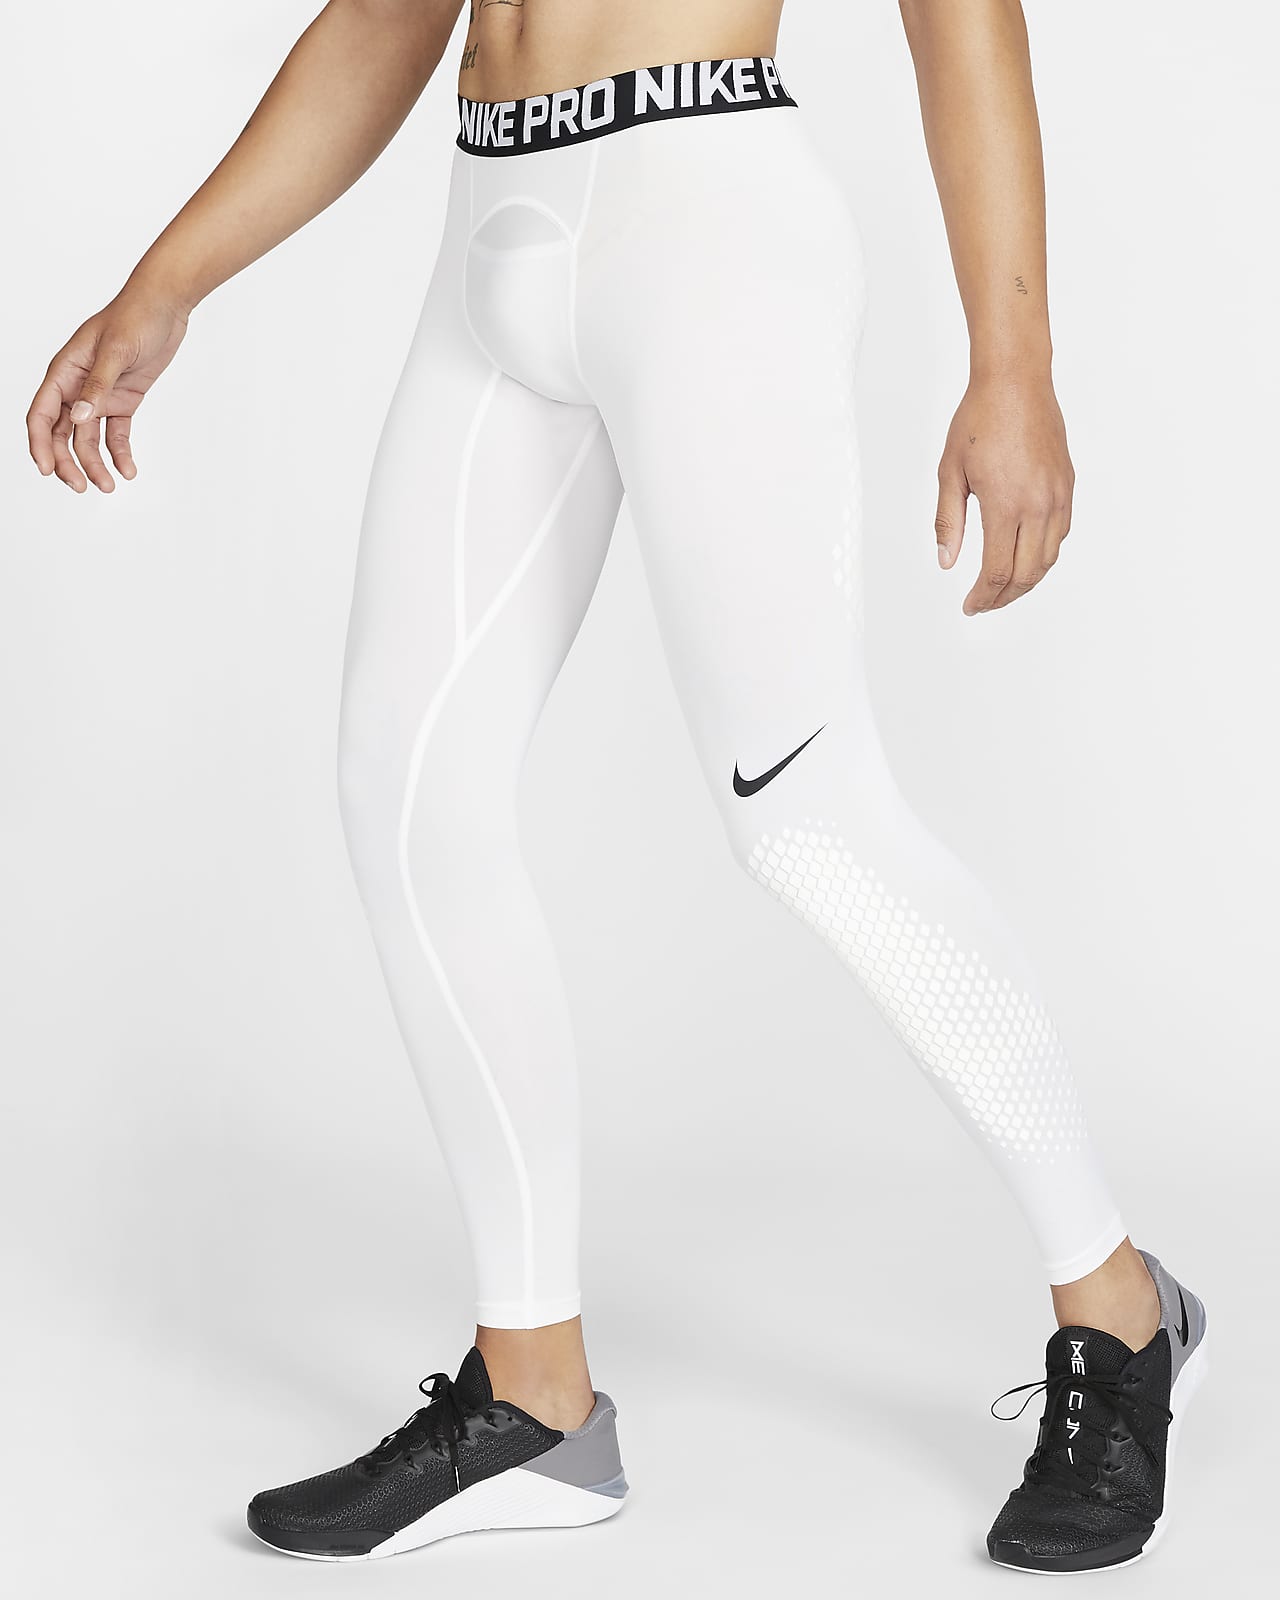 NEW Size M Nike Dri-FIT Pro Baseball Sliding Shorts Black CT2568-010 Mens  Tights | eBay